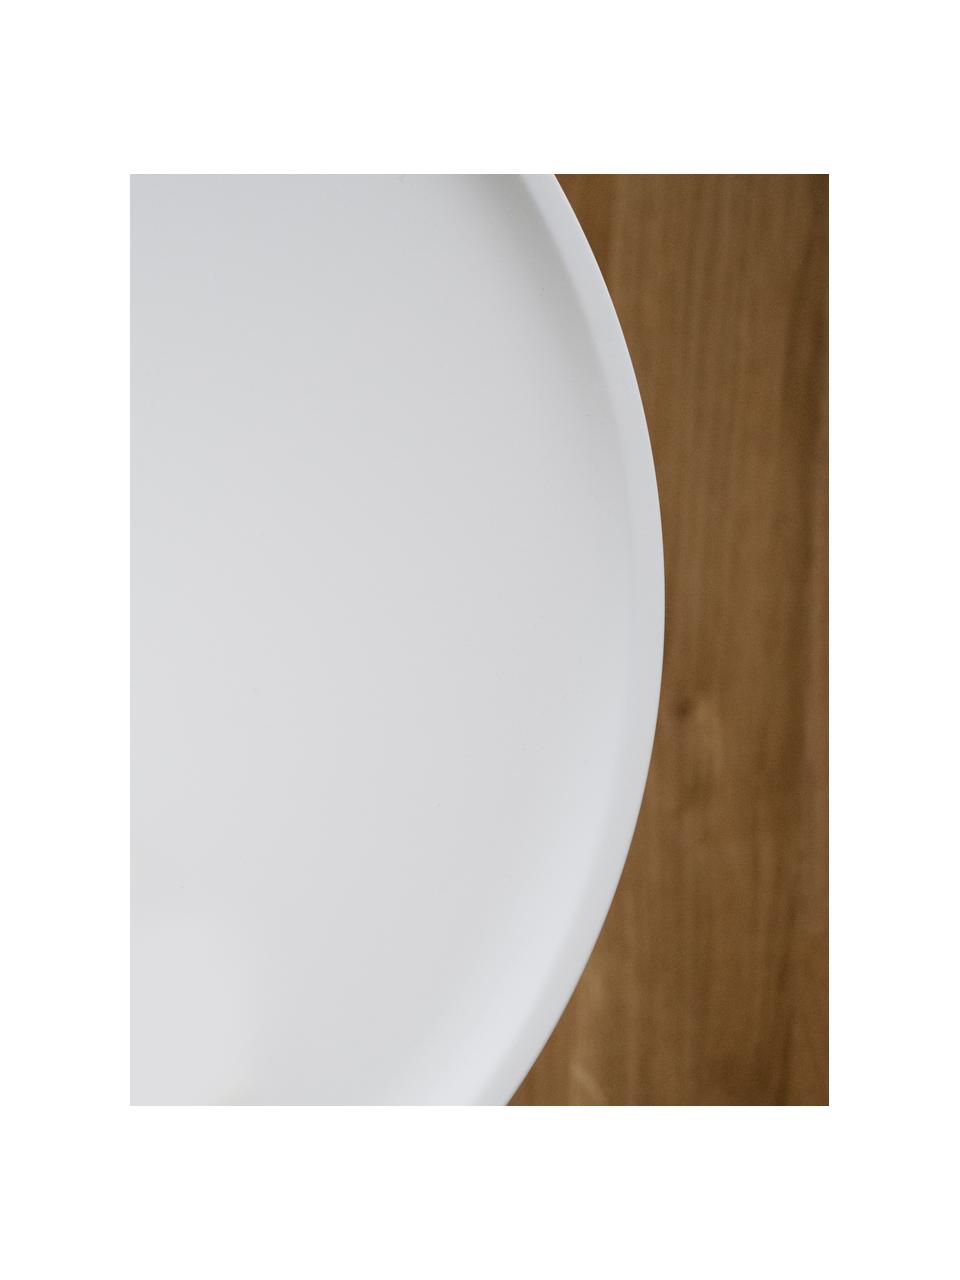 Couchtisch Daisy in Weiss, Tischplatte: Mitteldichte Holzfaserpla, Beine: Gummibaumholz, lackiert, Weiss, Ø 80 cm